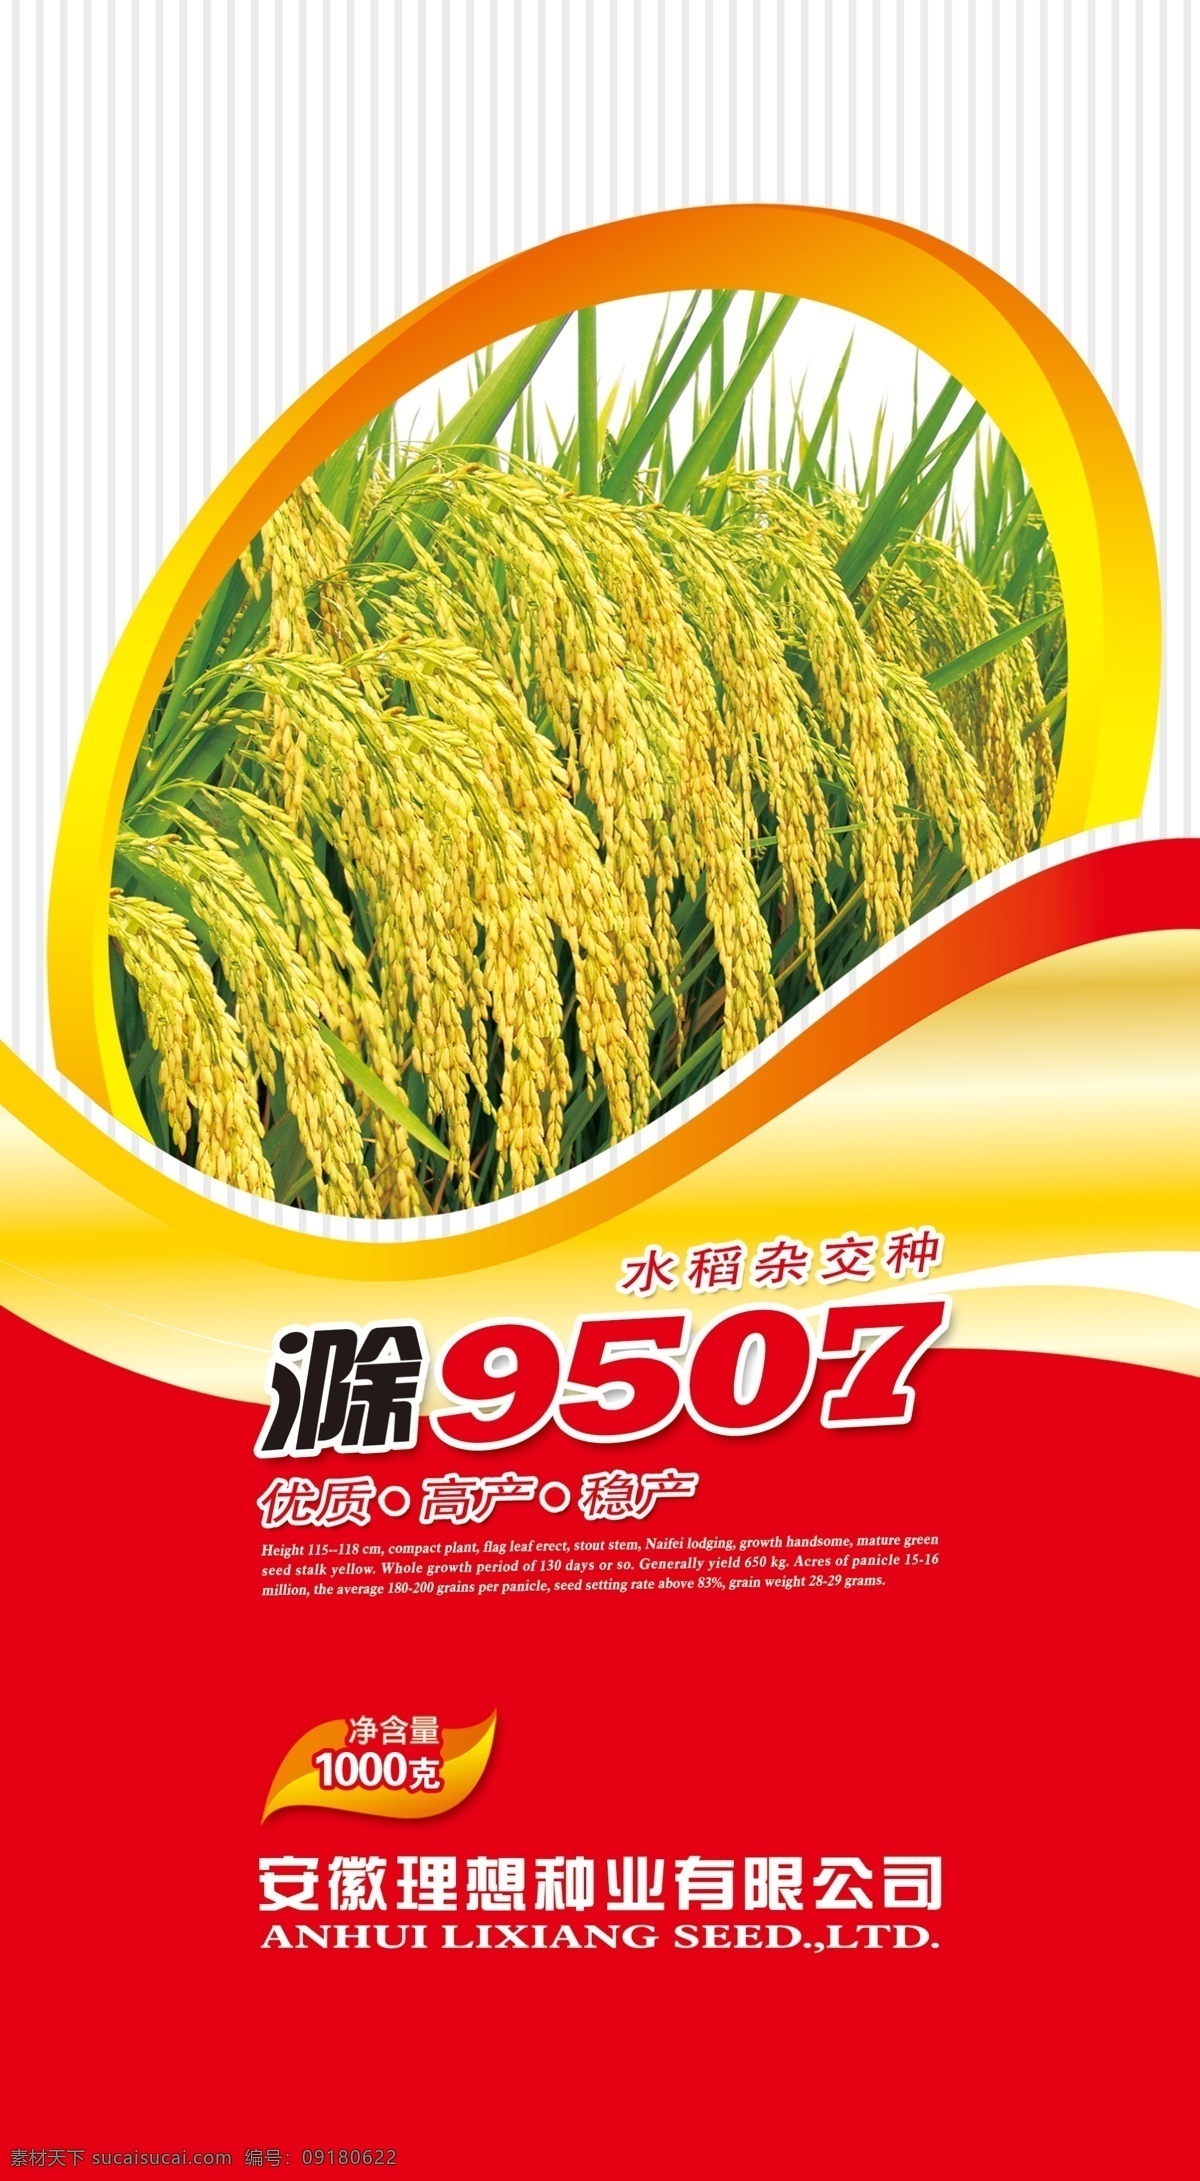 农业包装 农业 水稻 包装 水稻包装 炫丽 包装设计 广告设计模板 源文件